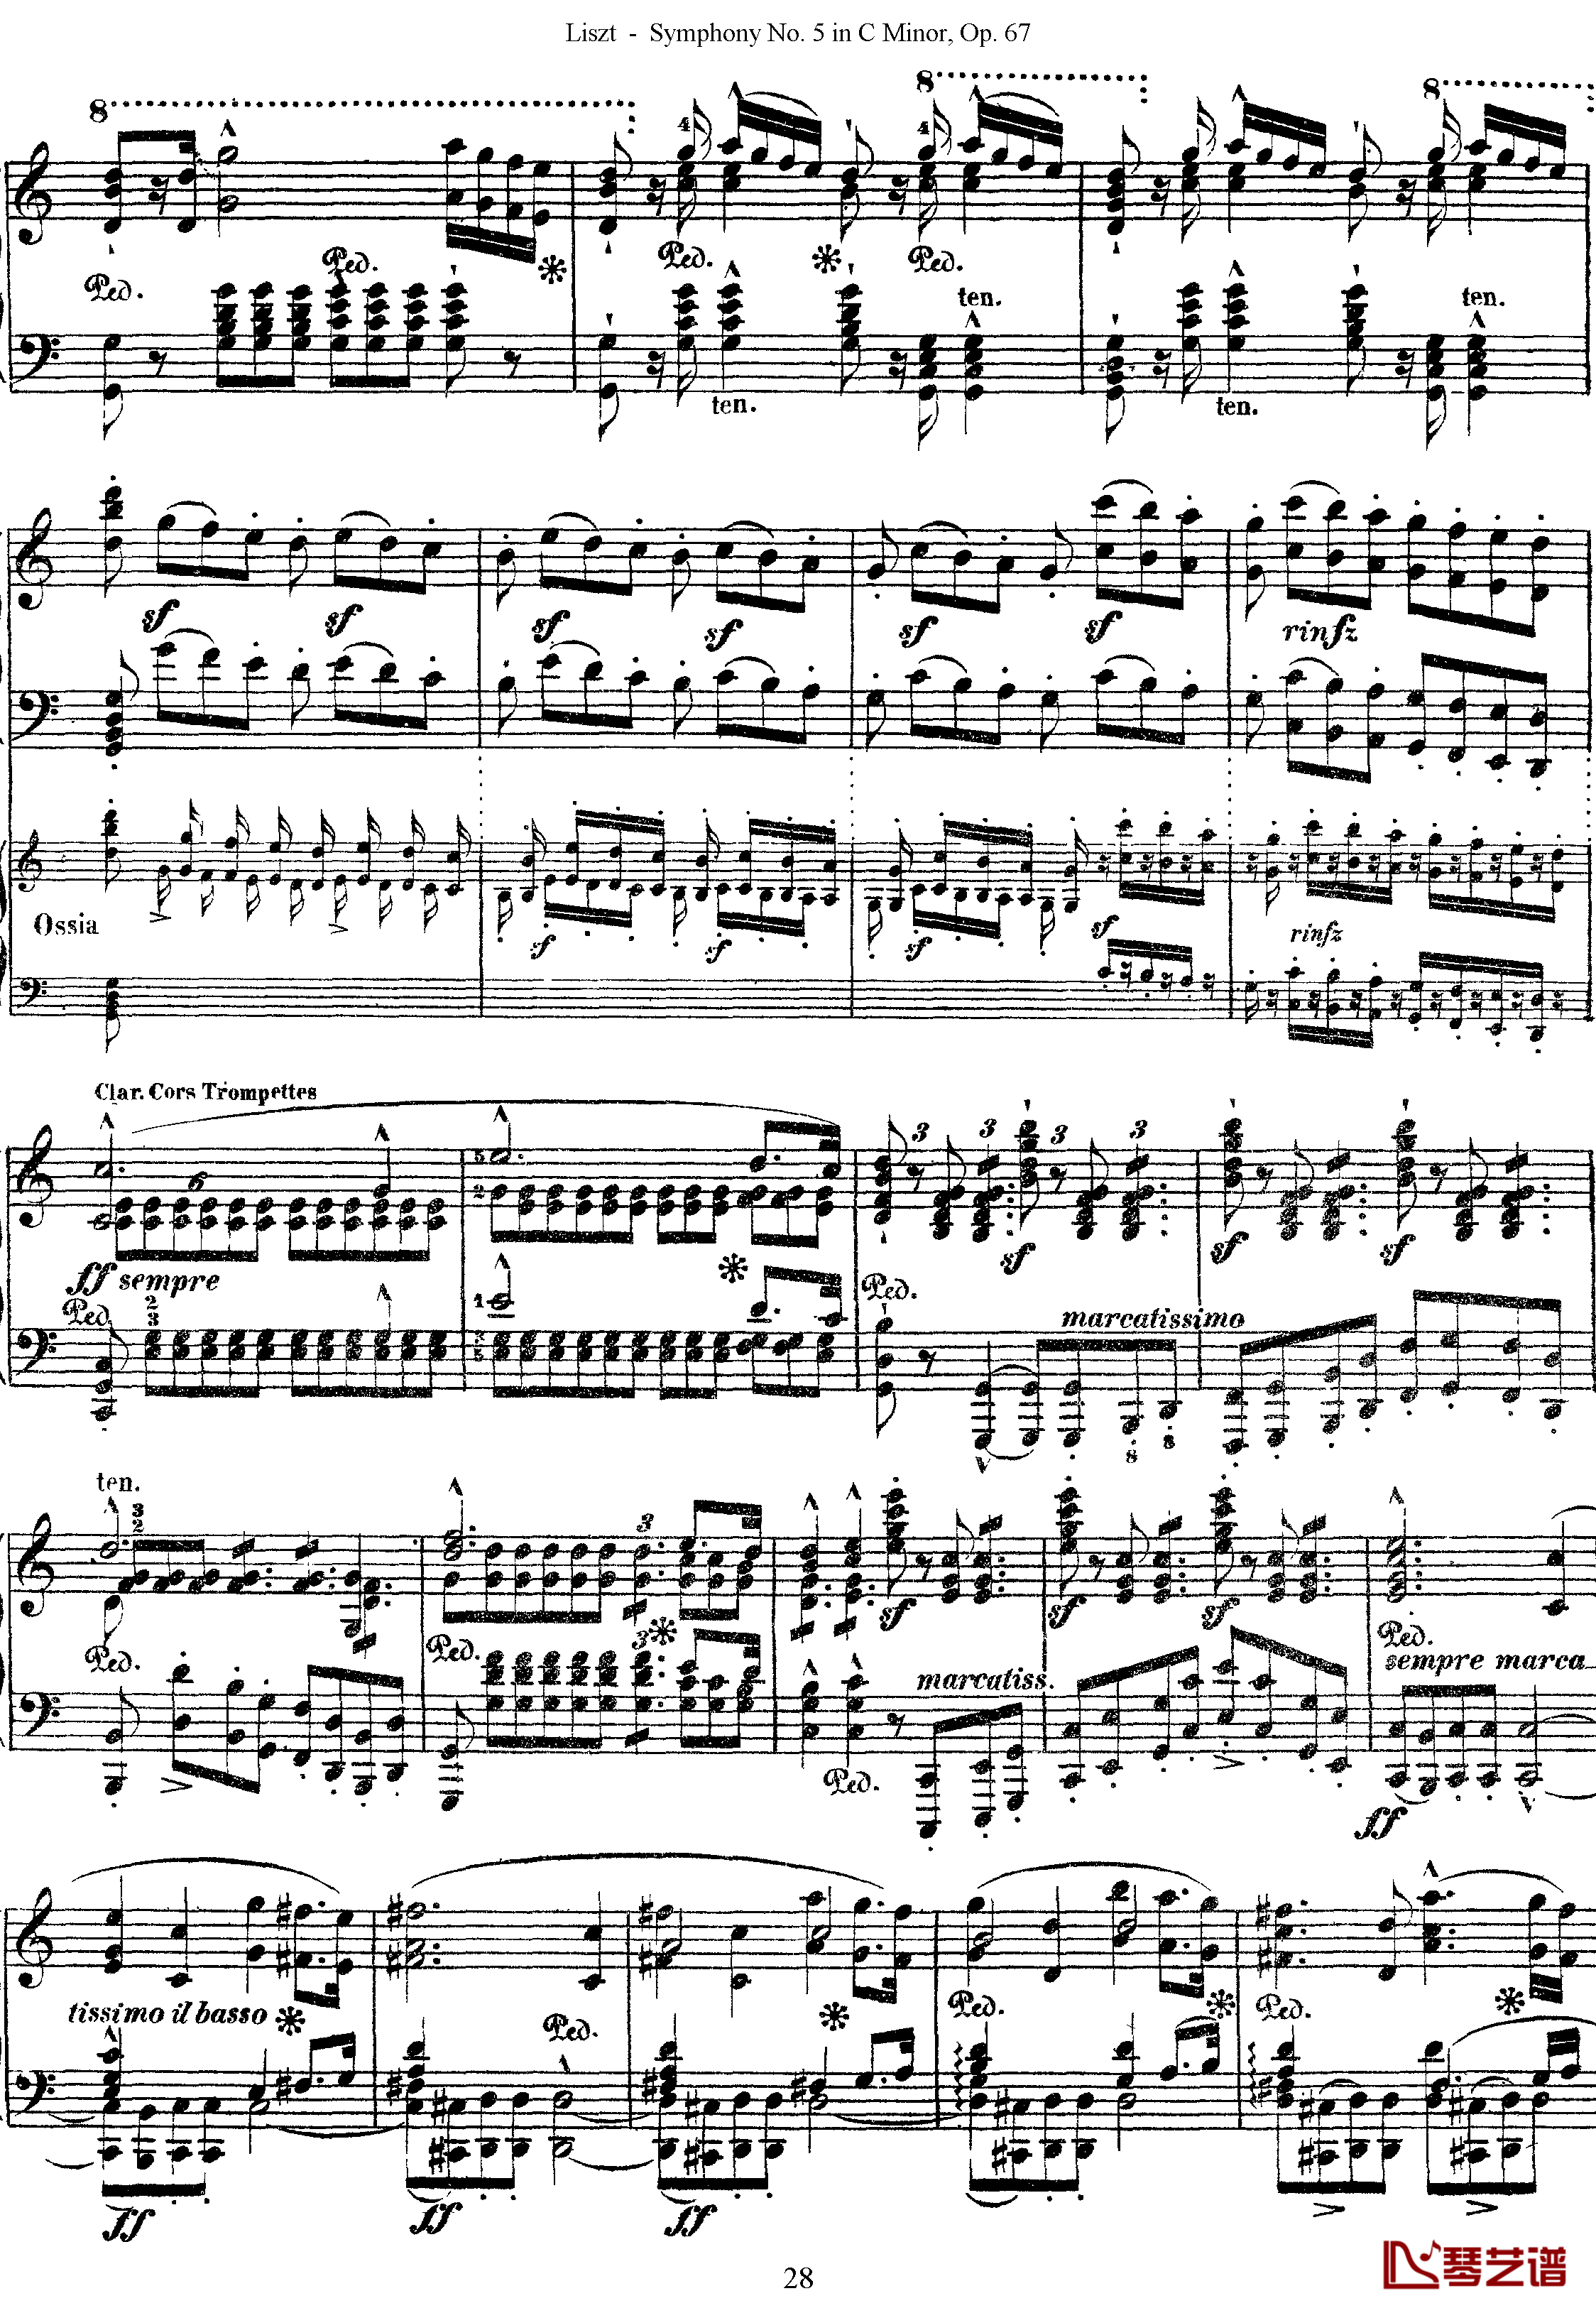 第五交响乐的钢琴曲钢琴谱-李斯特-李斯特改编自贝多芬28